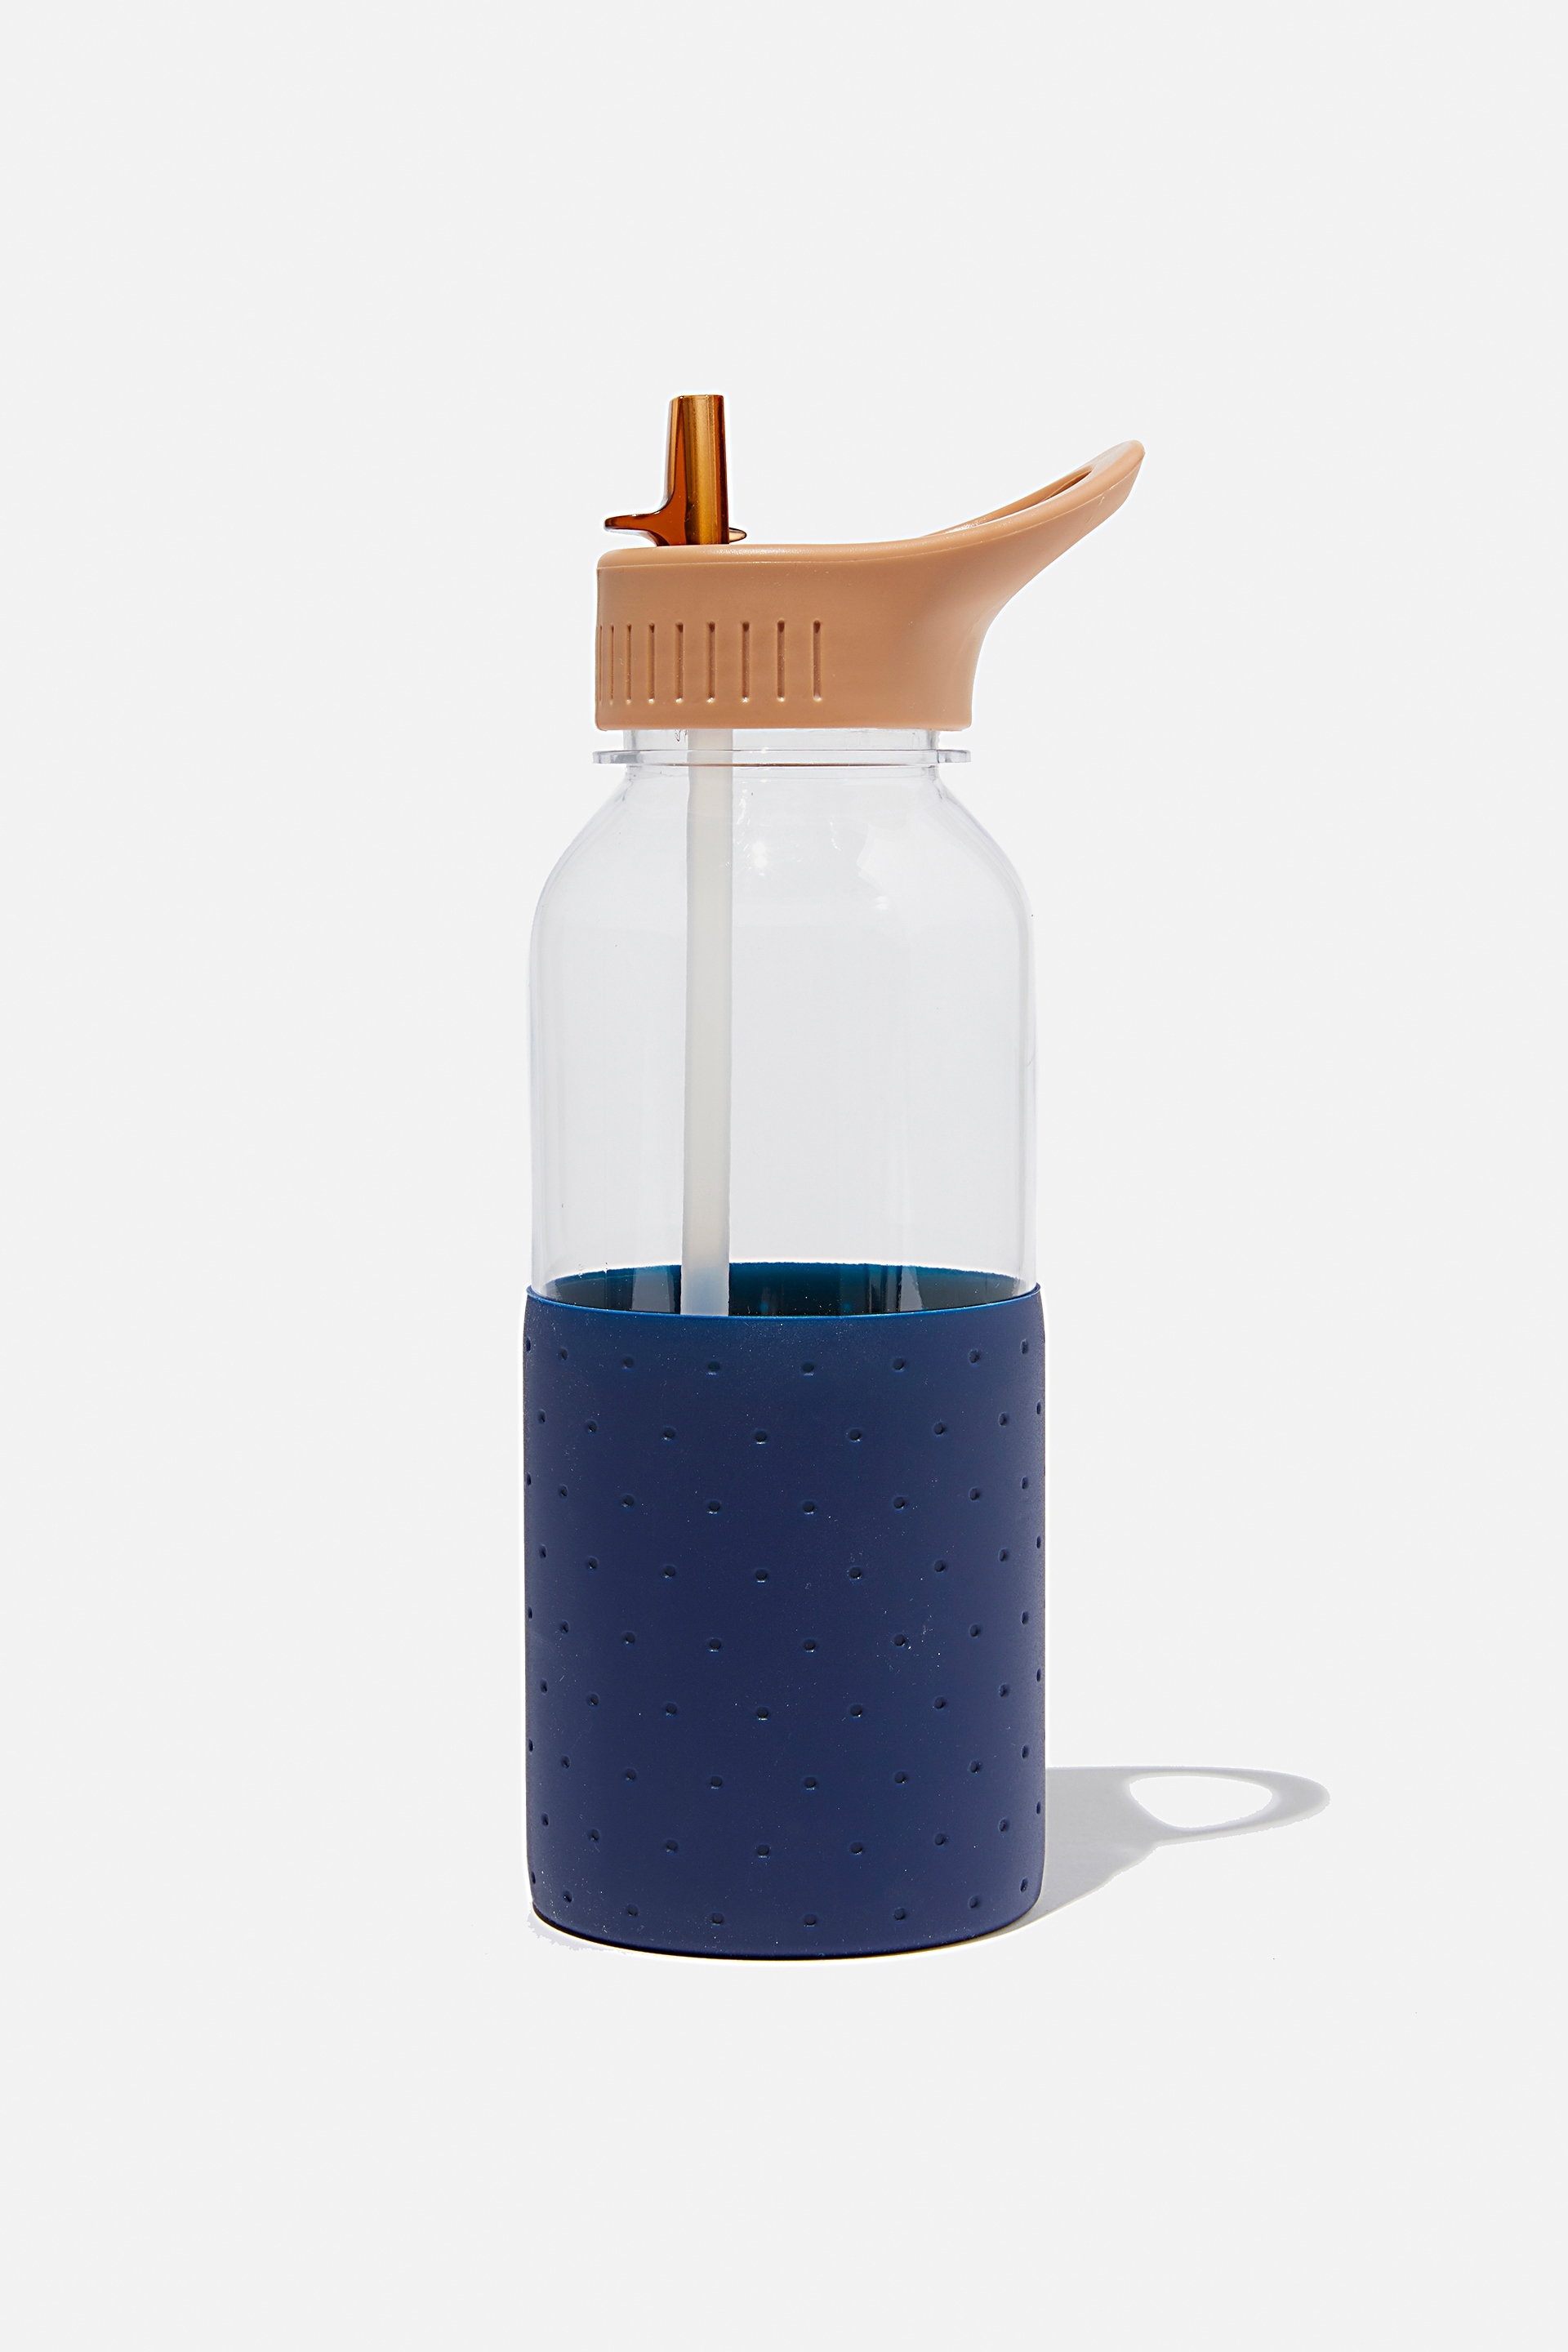 Typo - Premium Drink It Up Bottle - Polka indigo